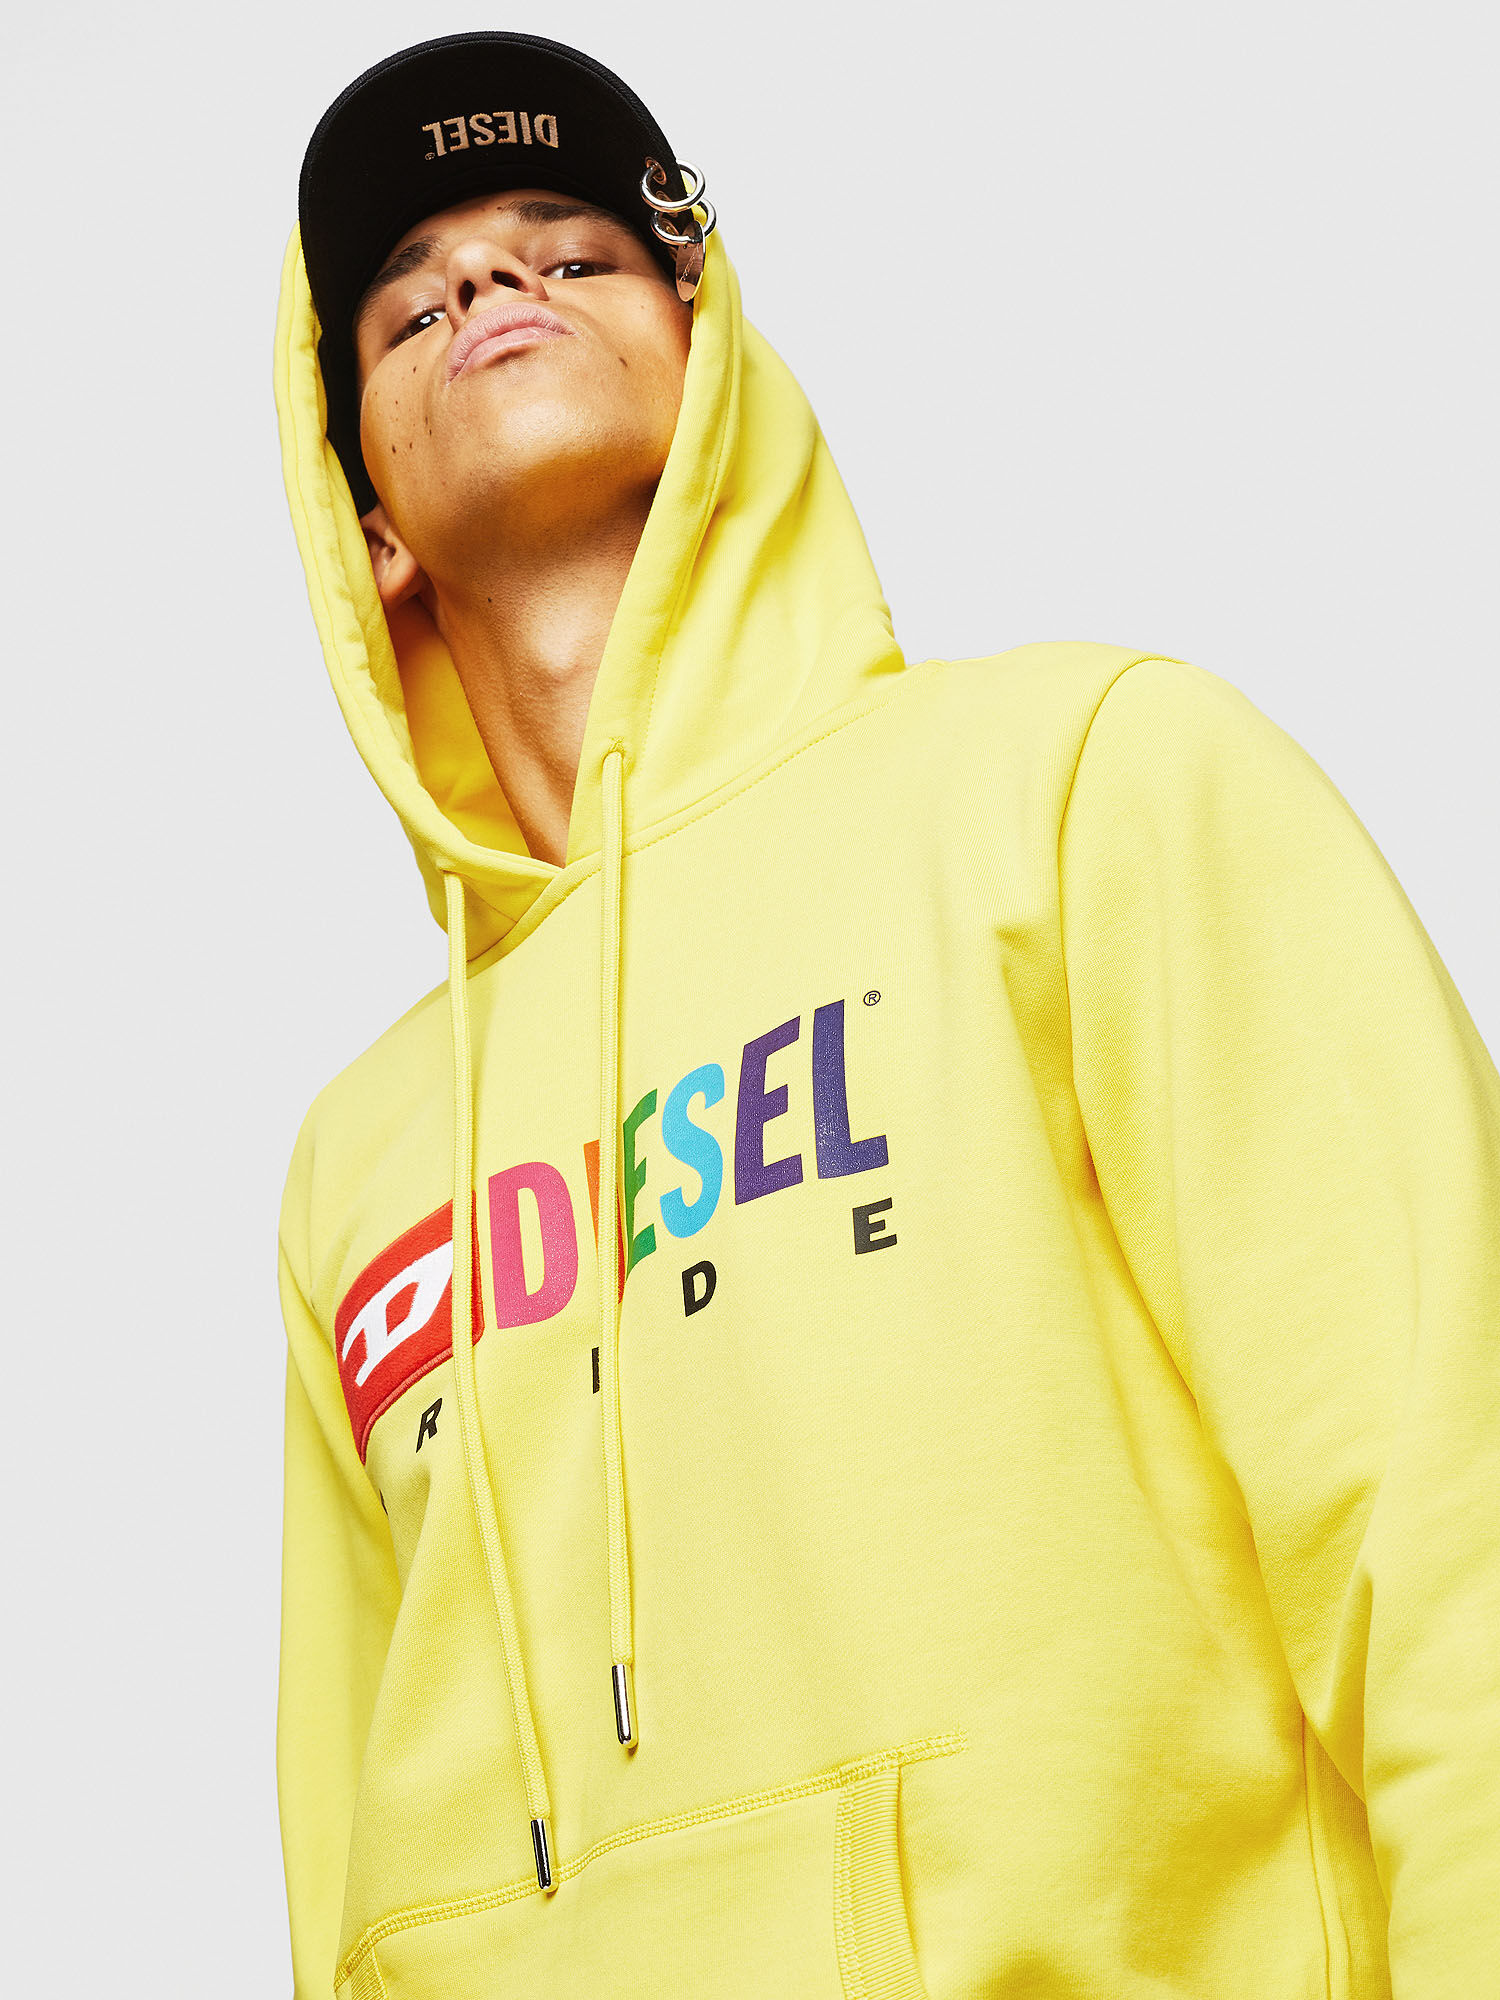 diesel yellow hoodie